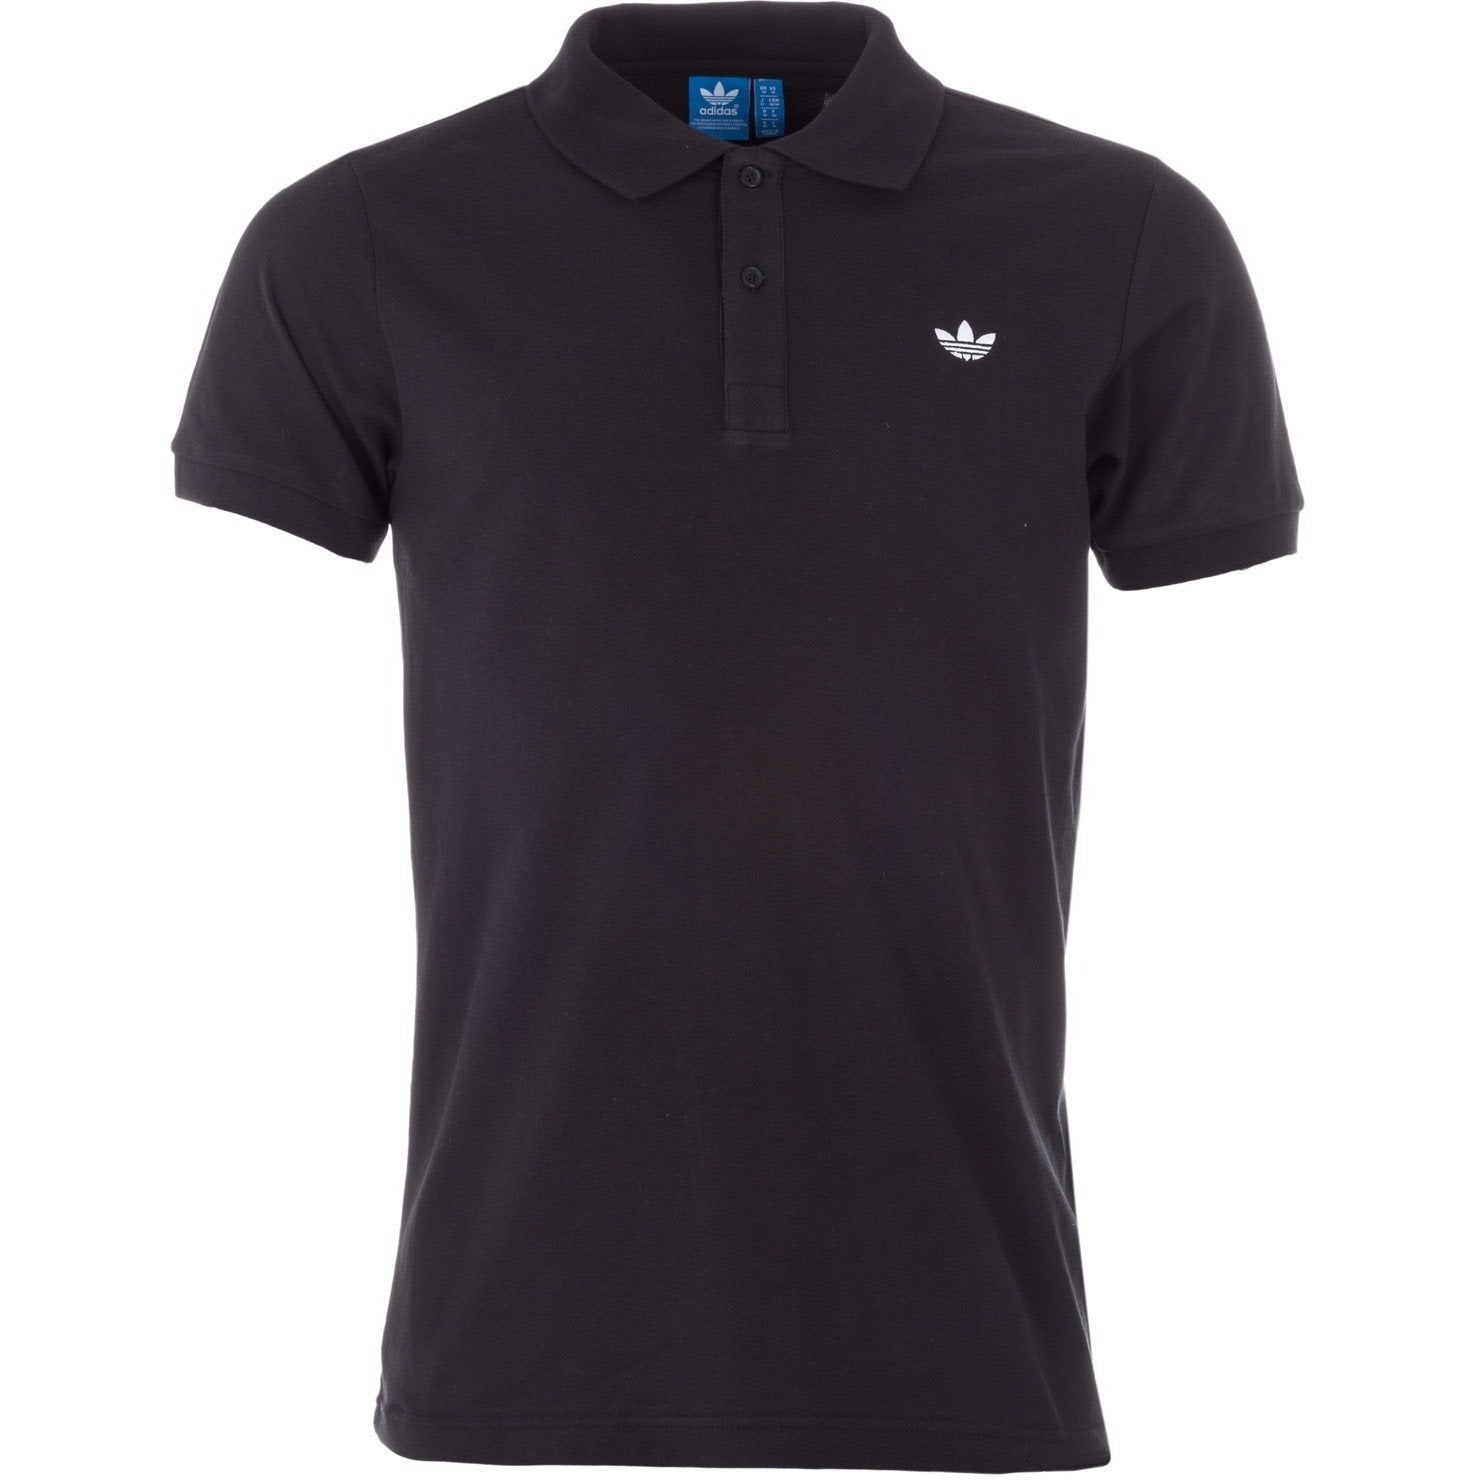 Adidas Polo Shirts - Black